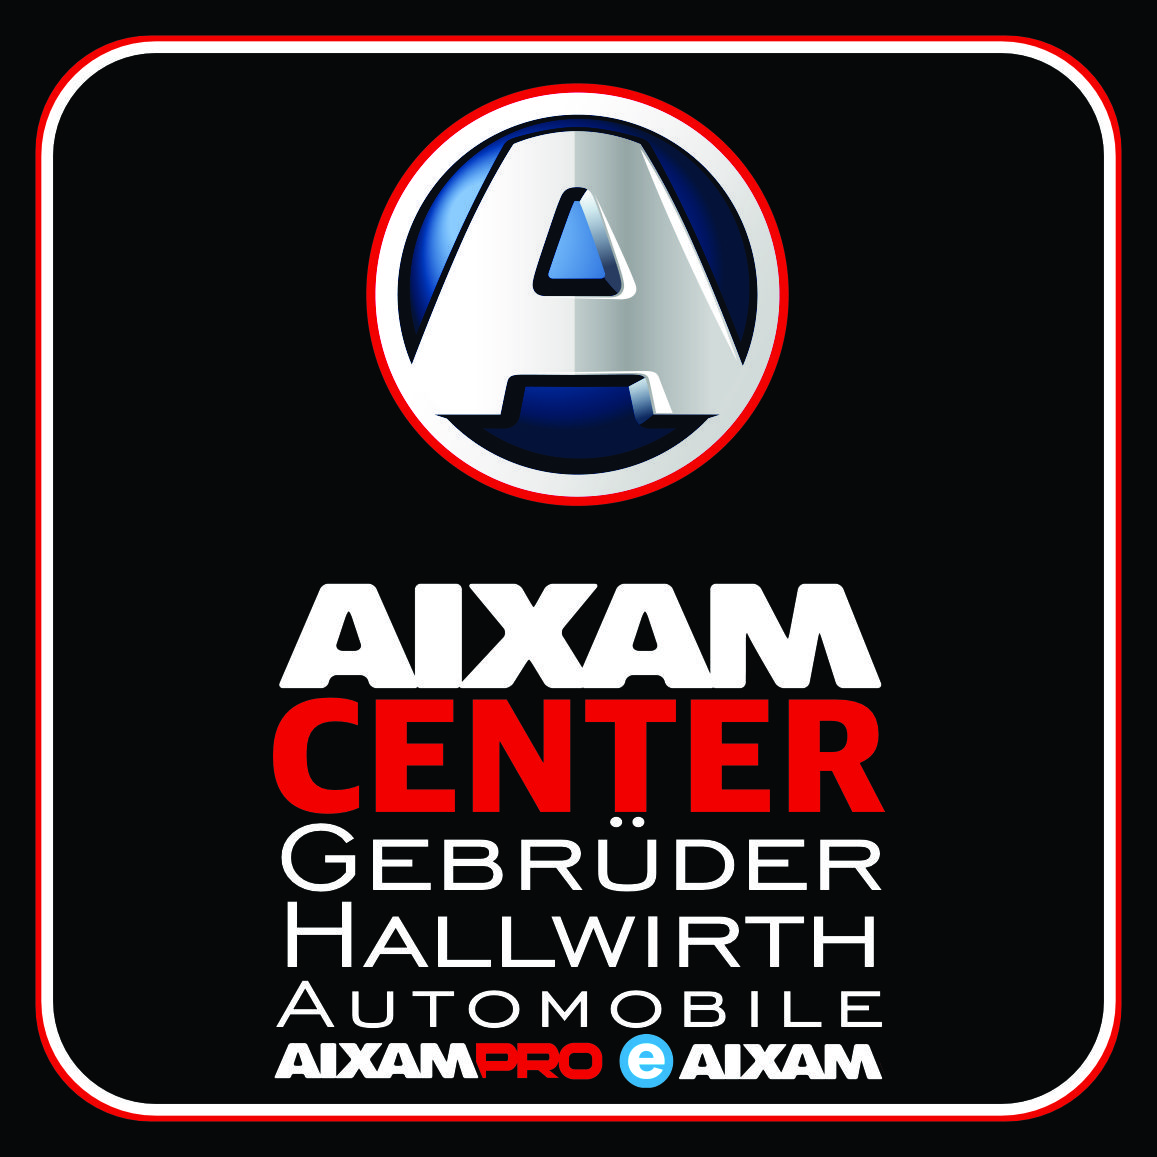 AIXAM Center Gebrüder Hallwirth Automobile